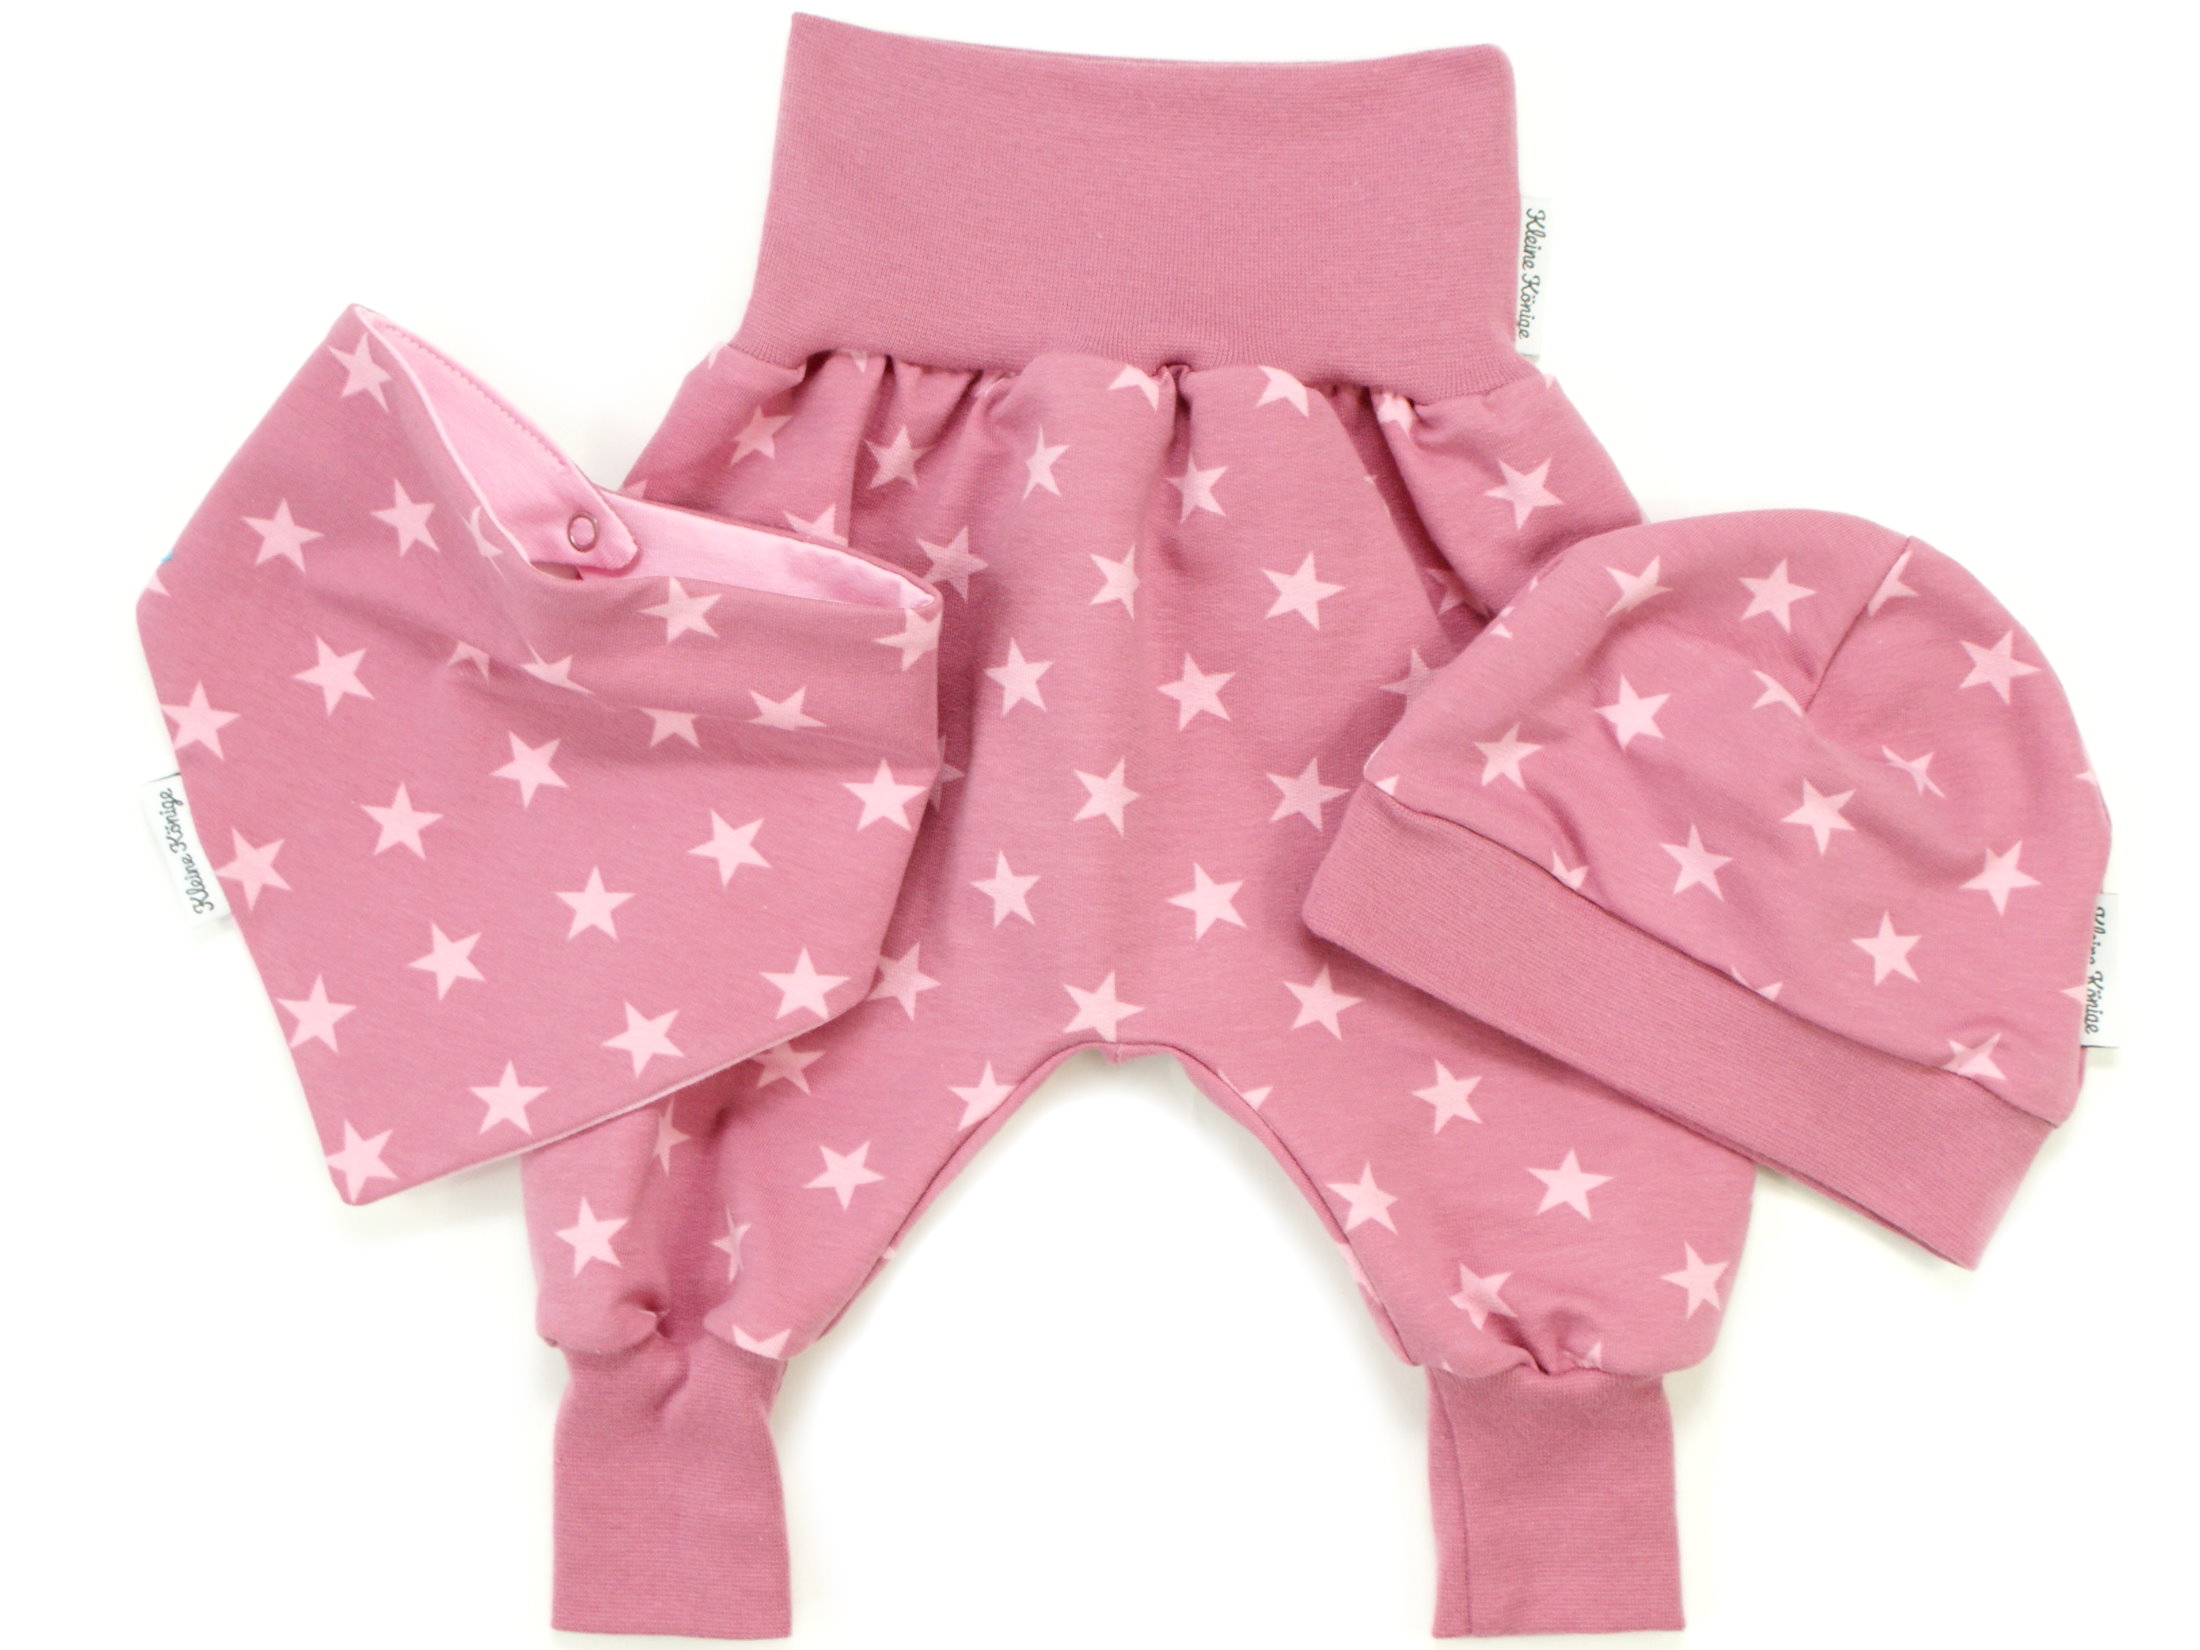 Mitwachshose Pumphose aus Sweatshirtstoff   pink mit Sternen 